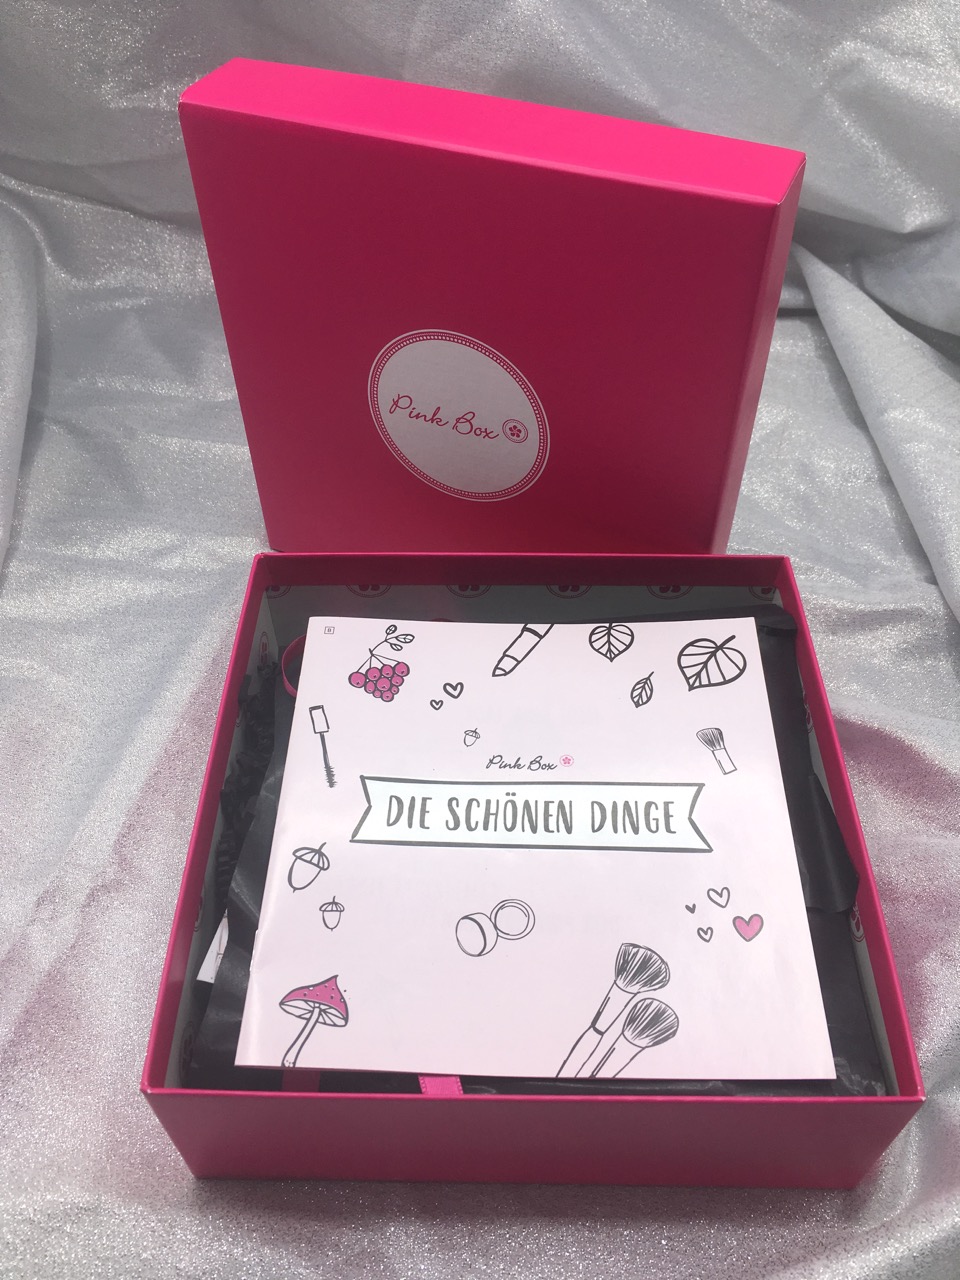 Pink Box – Die schönen Dinge